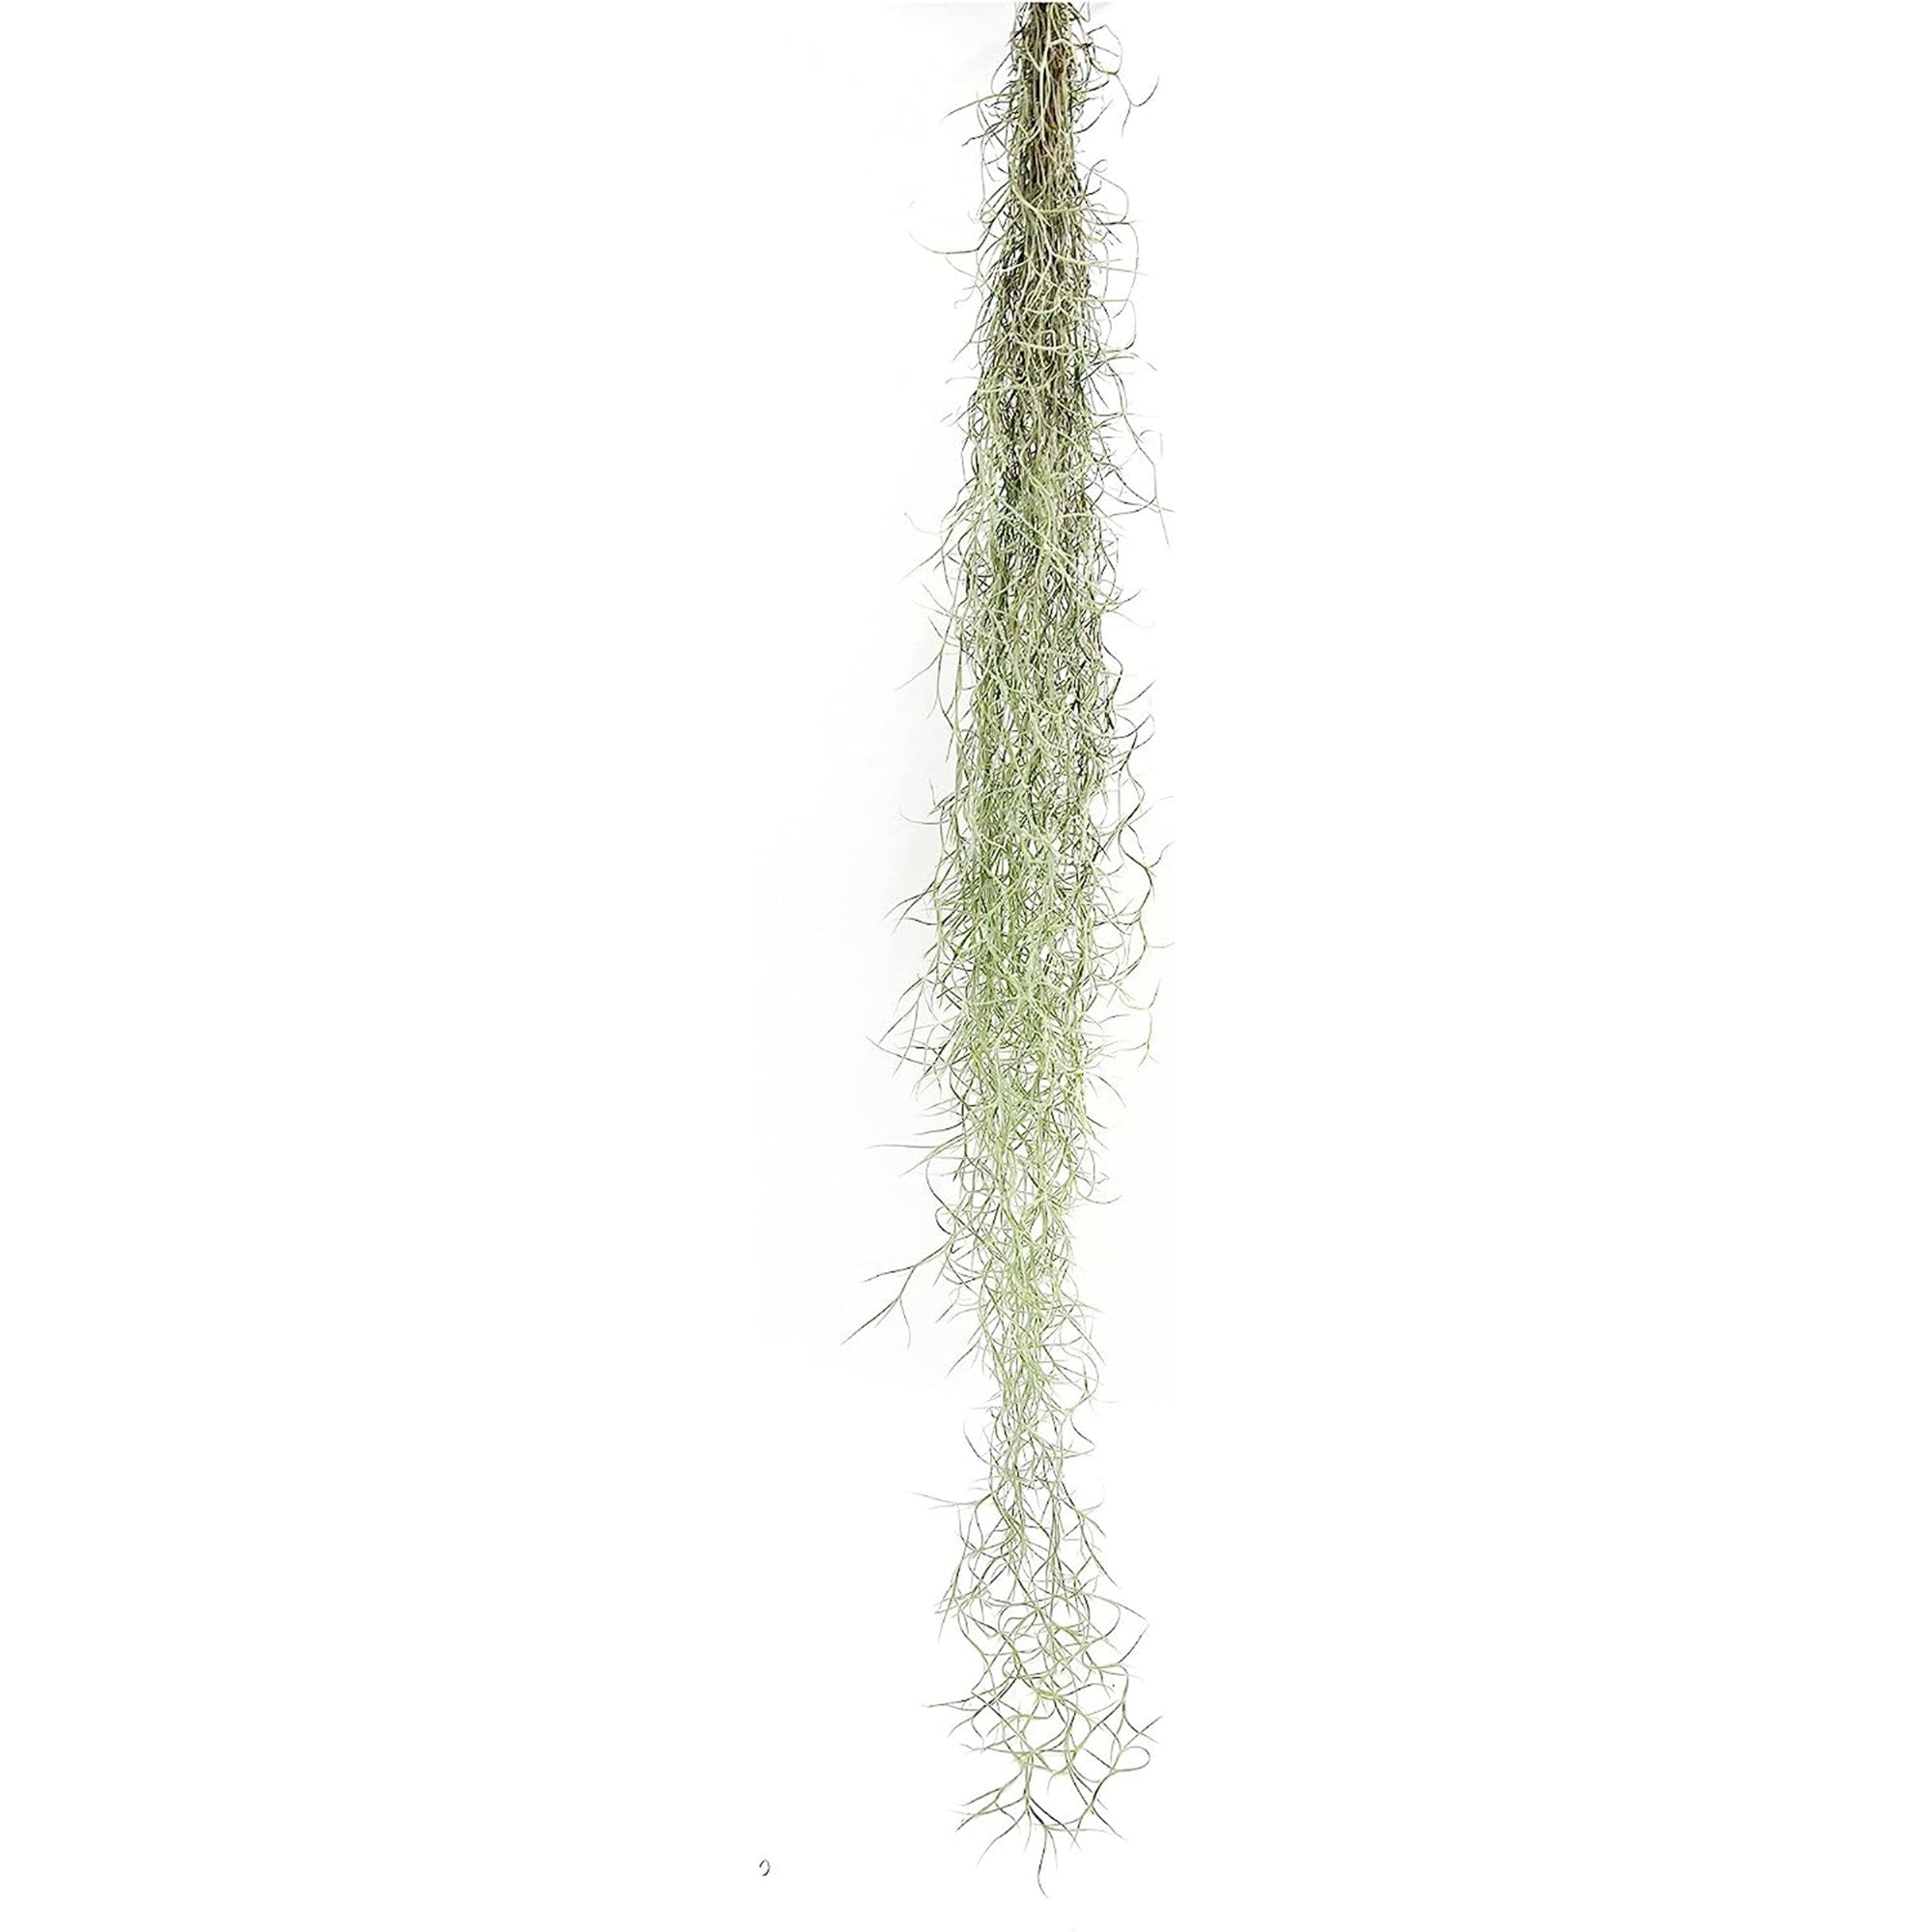 Tillandsia Usneoides "Spanish Moss"